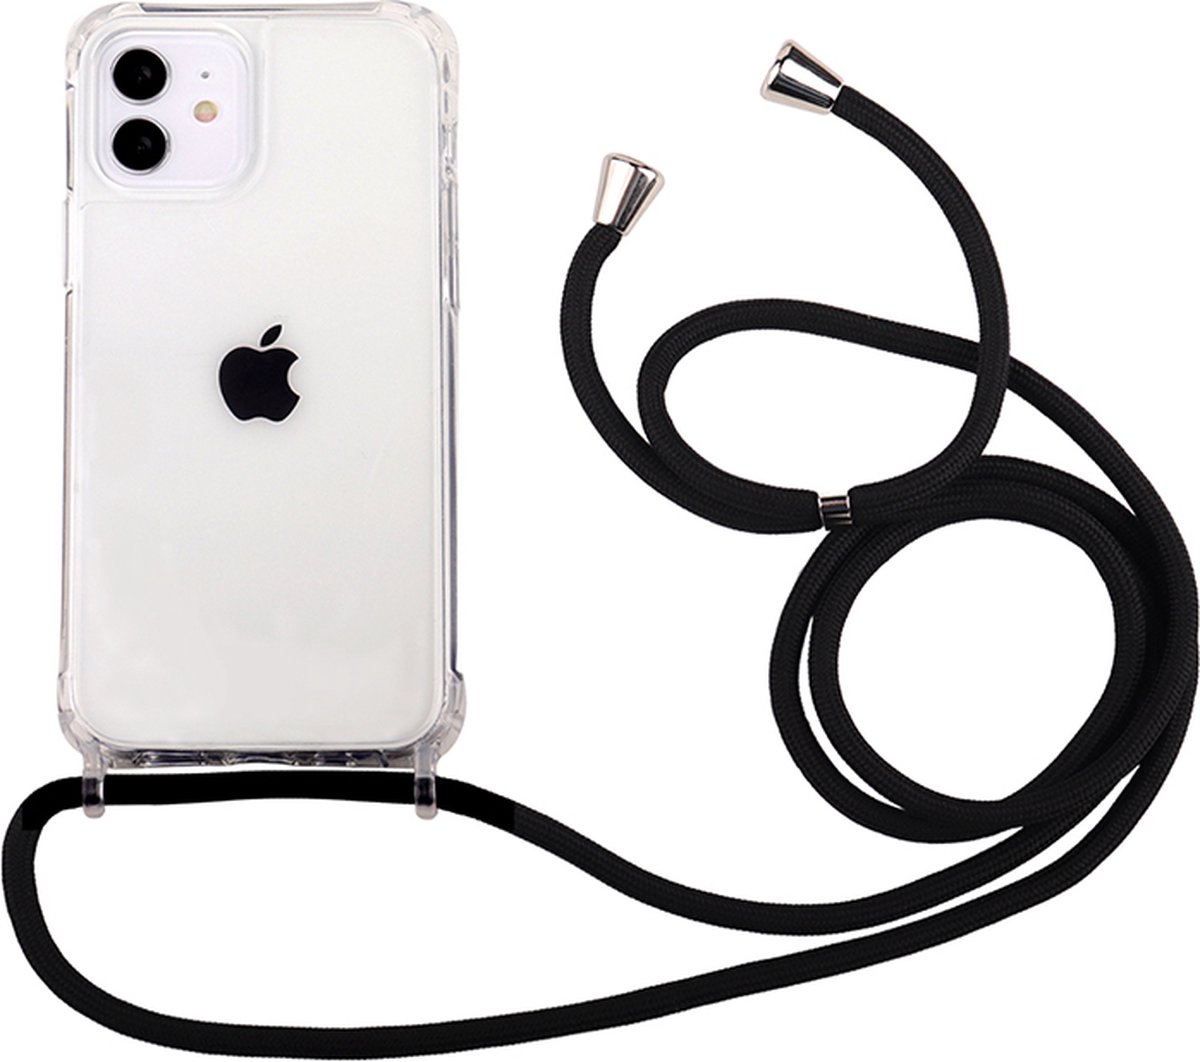 iPhone 12 Mini transparant TPU hoesje met koord - Zwart koord - TPU - Stevig - Telehoesje - Goedkoop - Necklace - Neckstrap - Telefoon koord - Telefoonhoesje met koord - Ketting koord - Verstelbaar koord